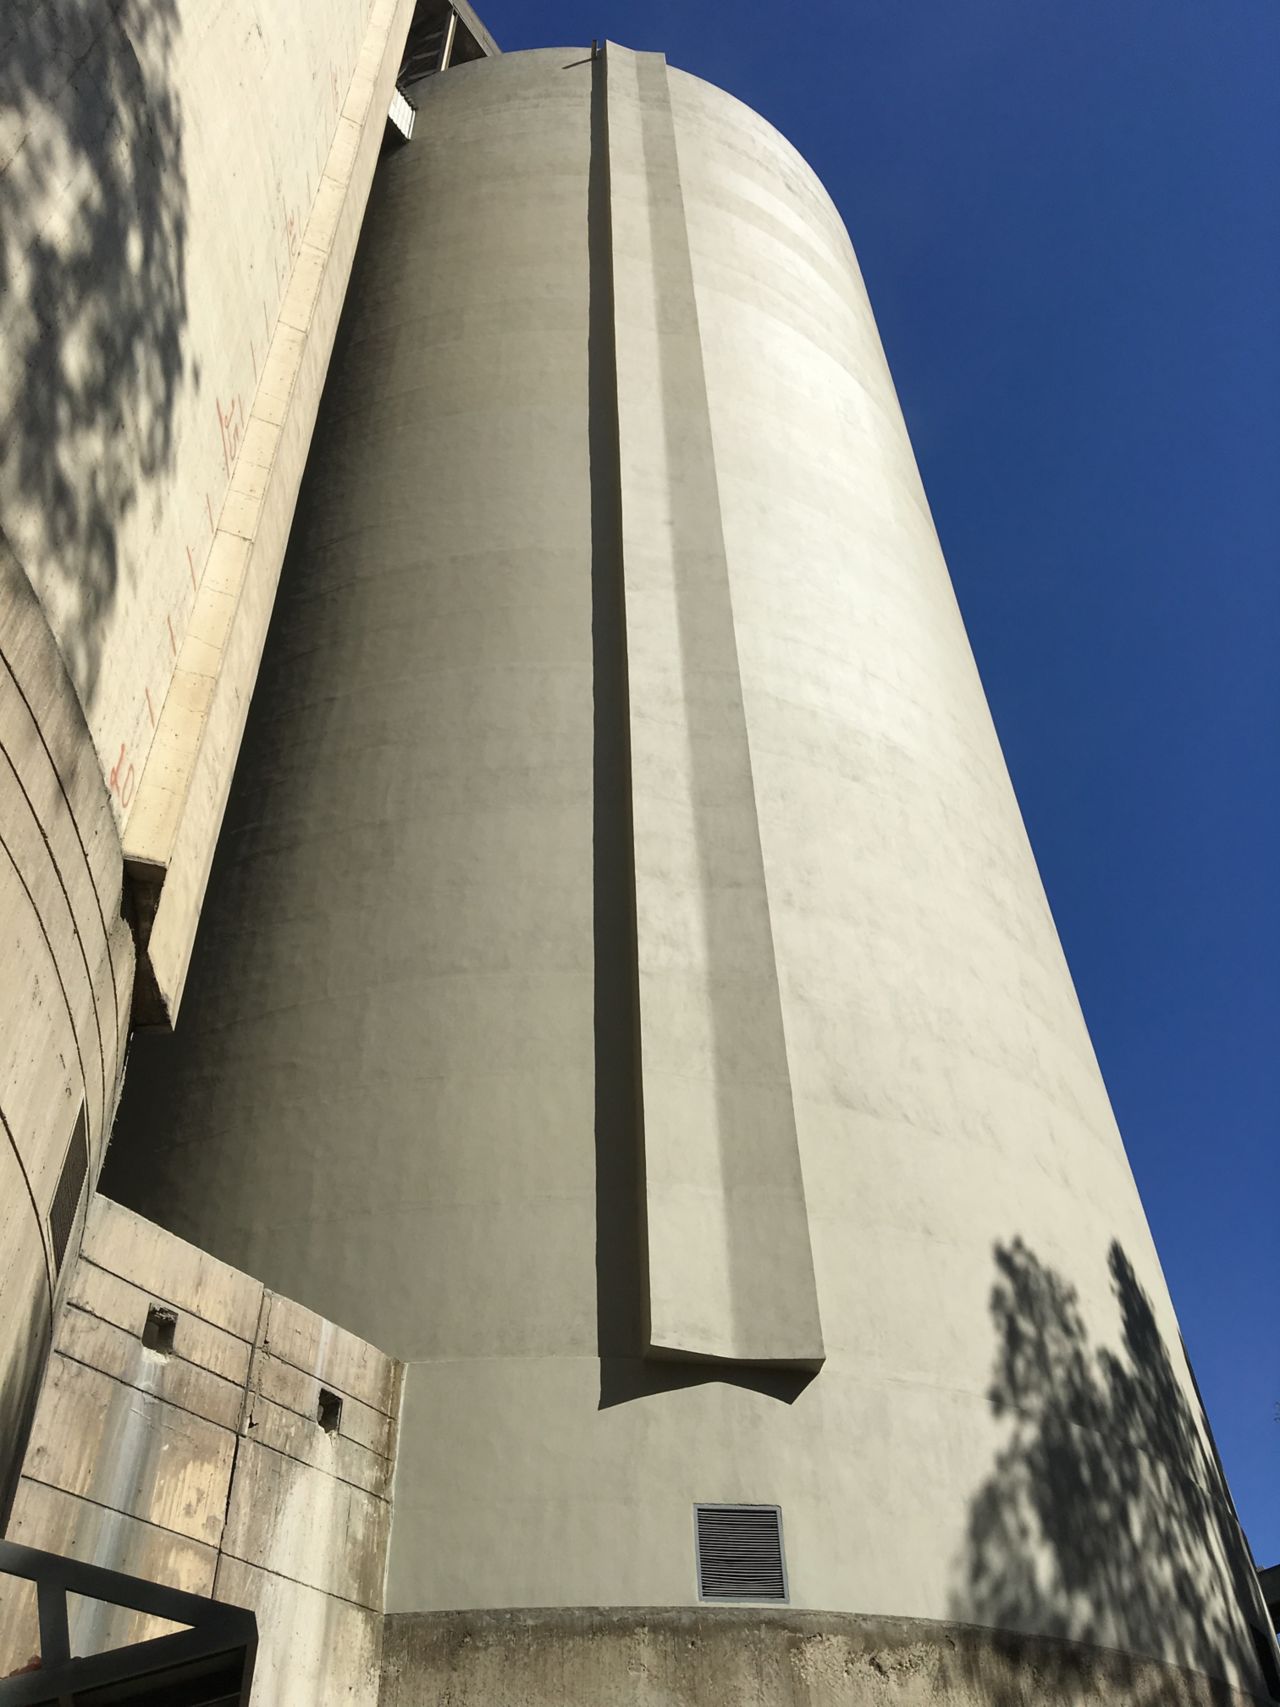 Concrete silo after concrete repair mortar renovation